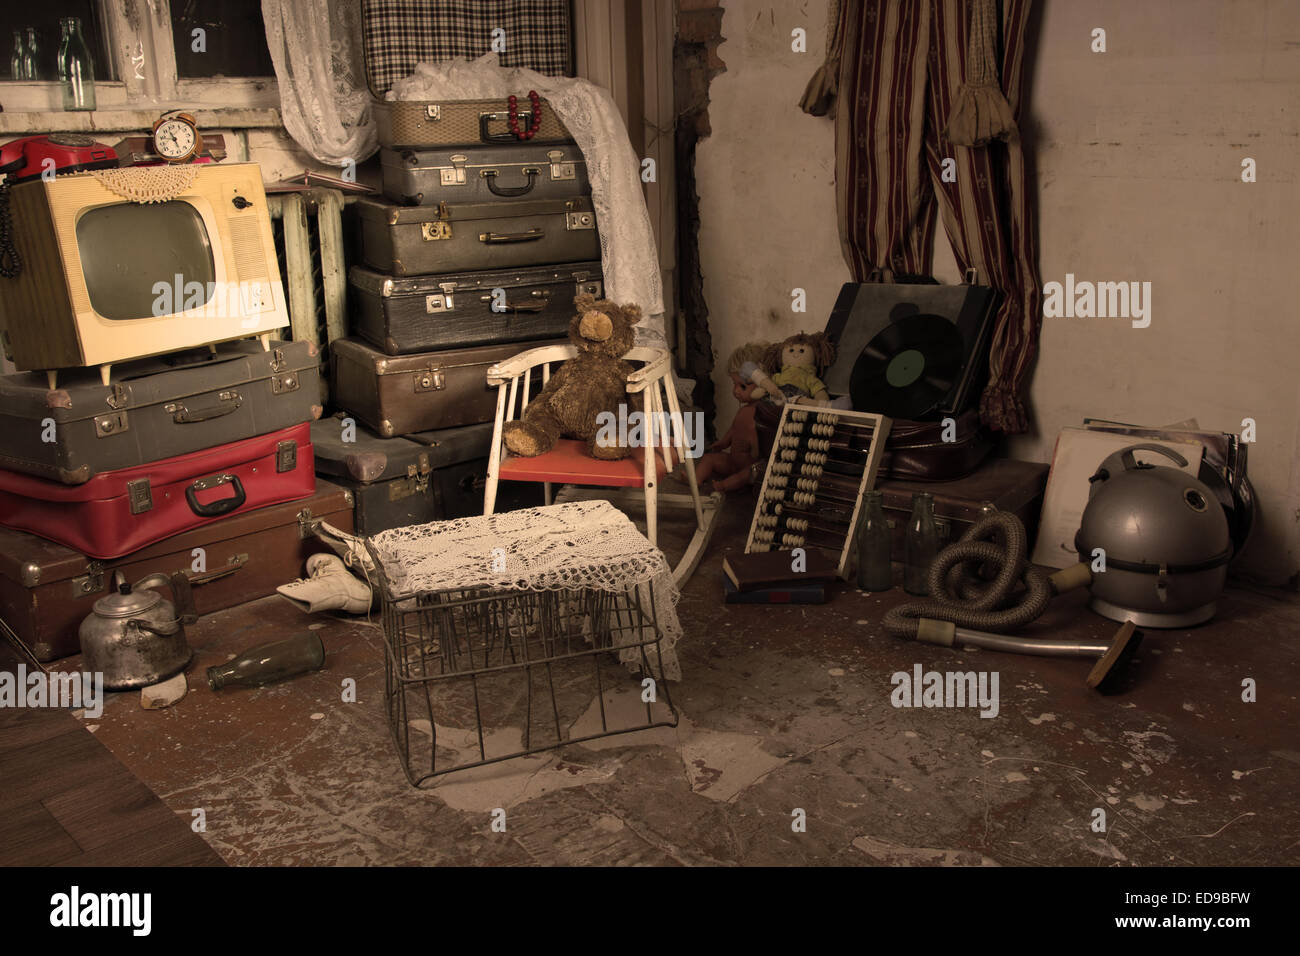 Sortierte ausrangierten alten Elemente in ein altes Zimmer mit Gepäck, Käfig, Fernsehen und andere Gegenstände. Stockfoto